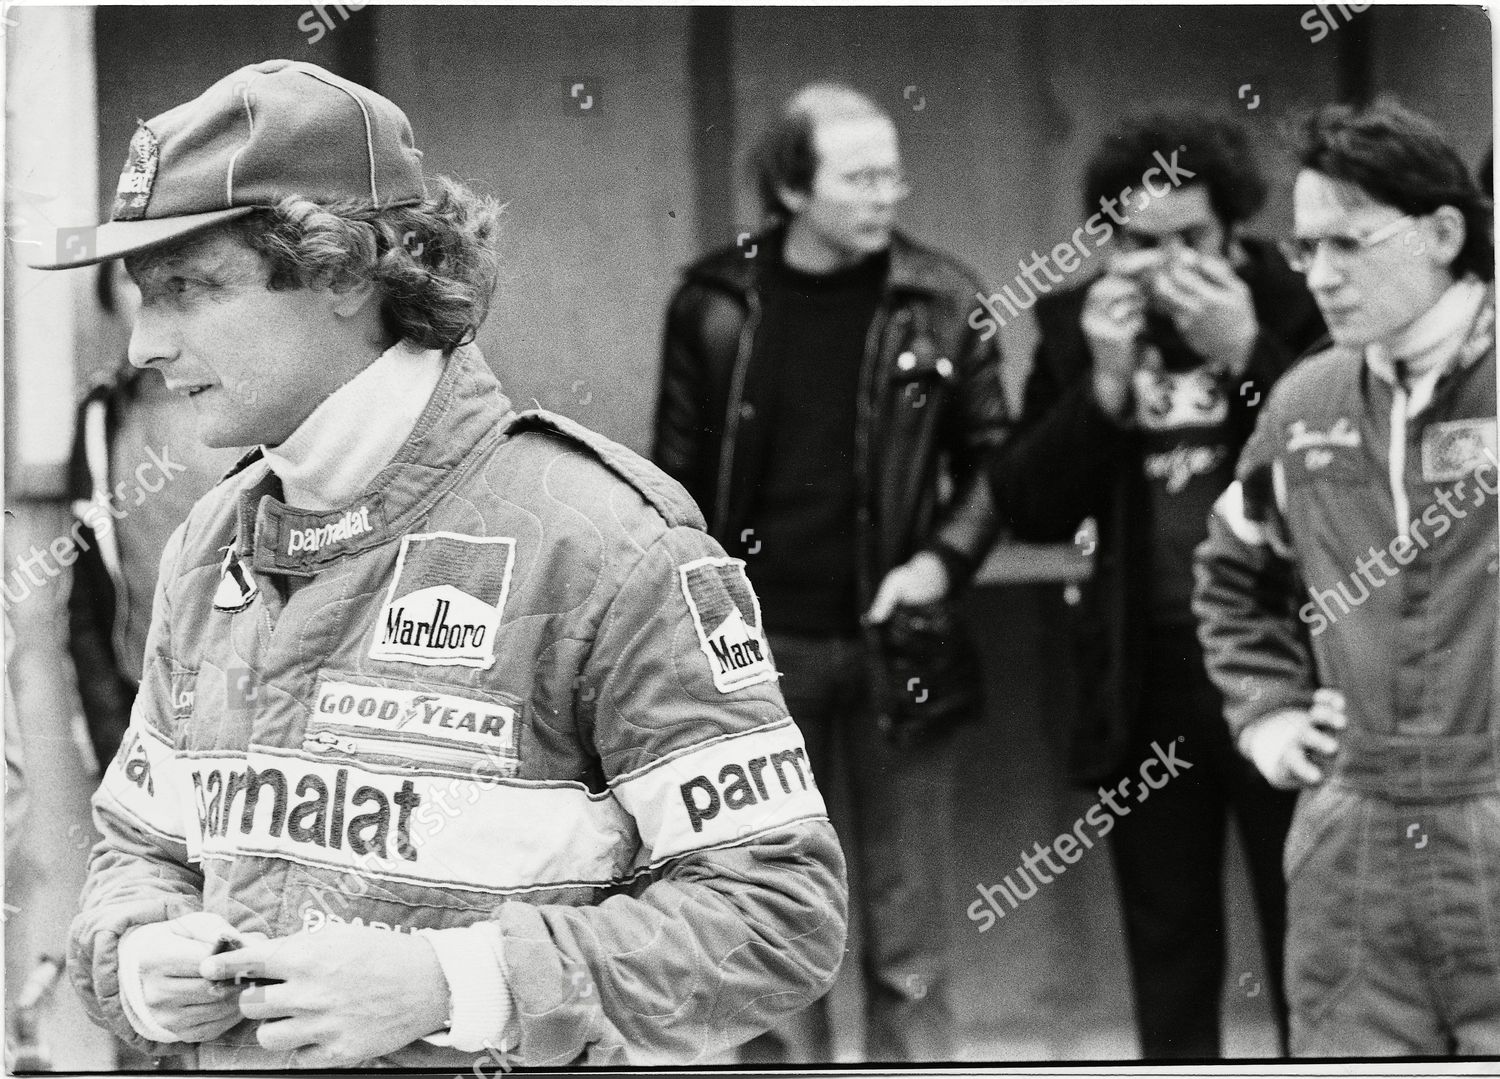 molécula rumor bahía Niki Lauda Won 2 Races 1978 - Foto de stock de contenido editorial: imagen  de stock | Shutterstock Editorial